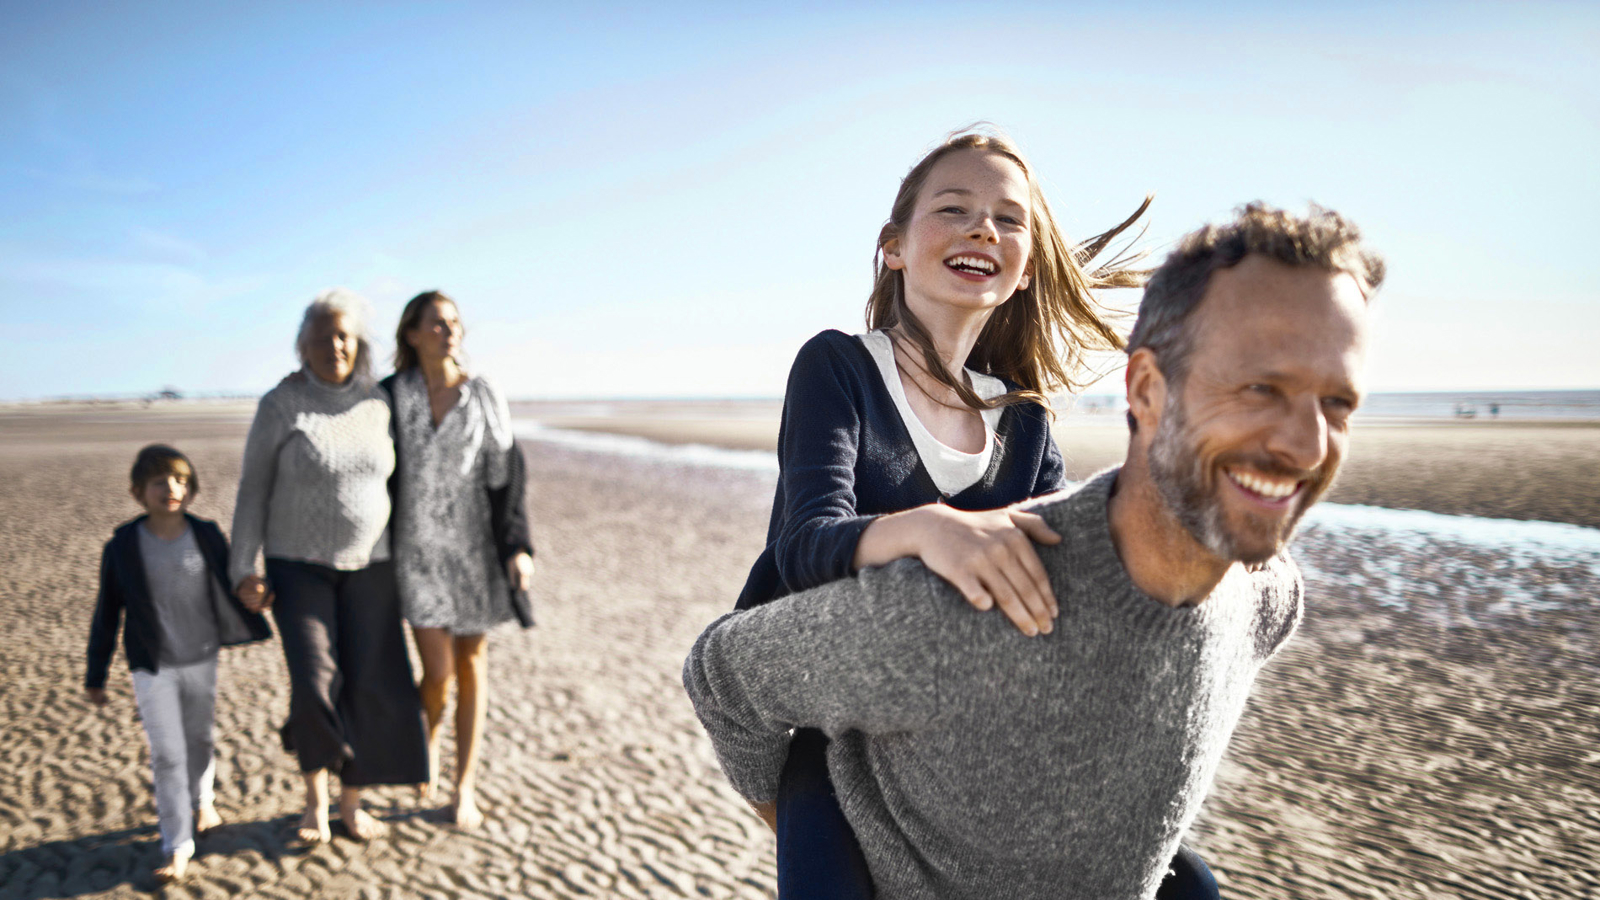 Een gezin op het strand met een man die een kind op zijn rug draagt